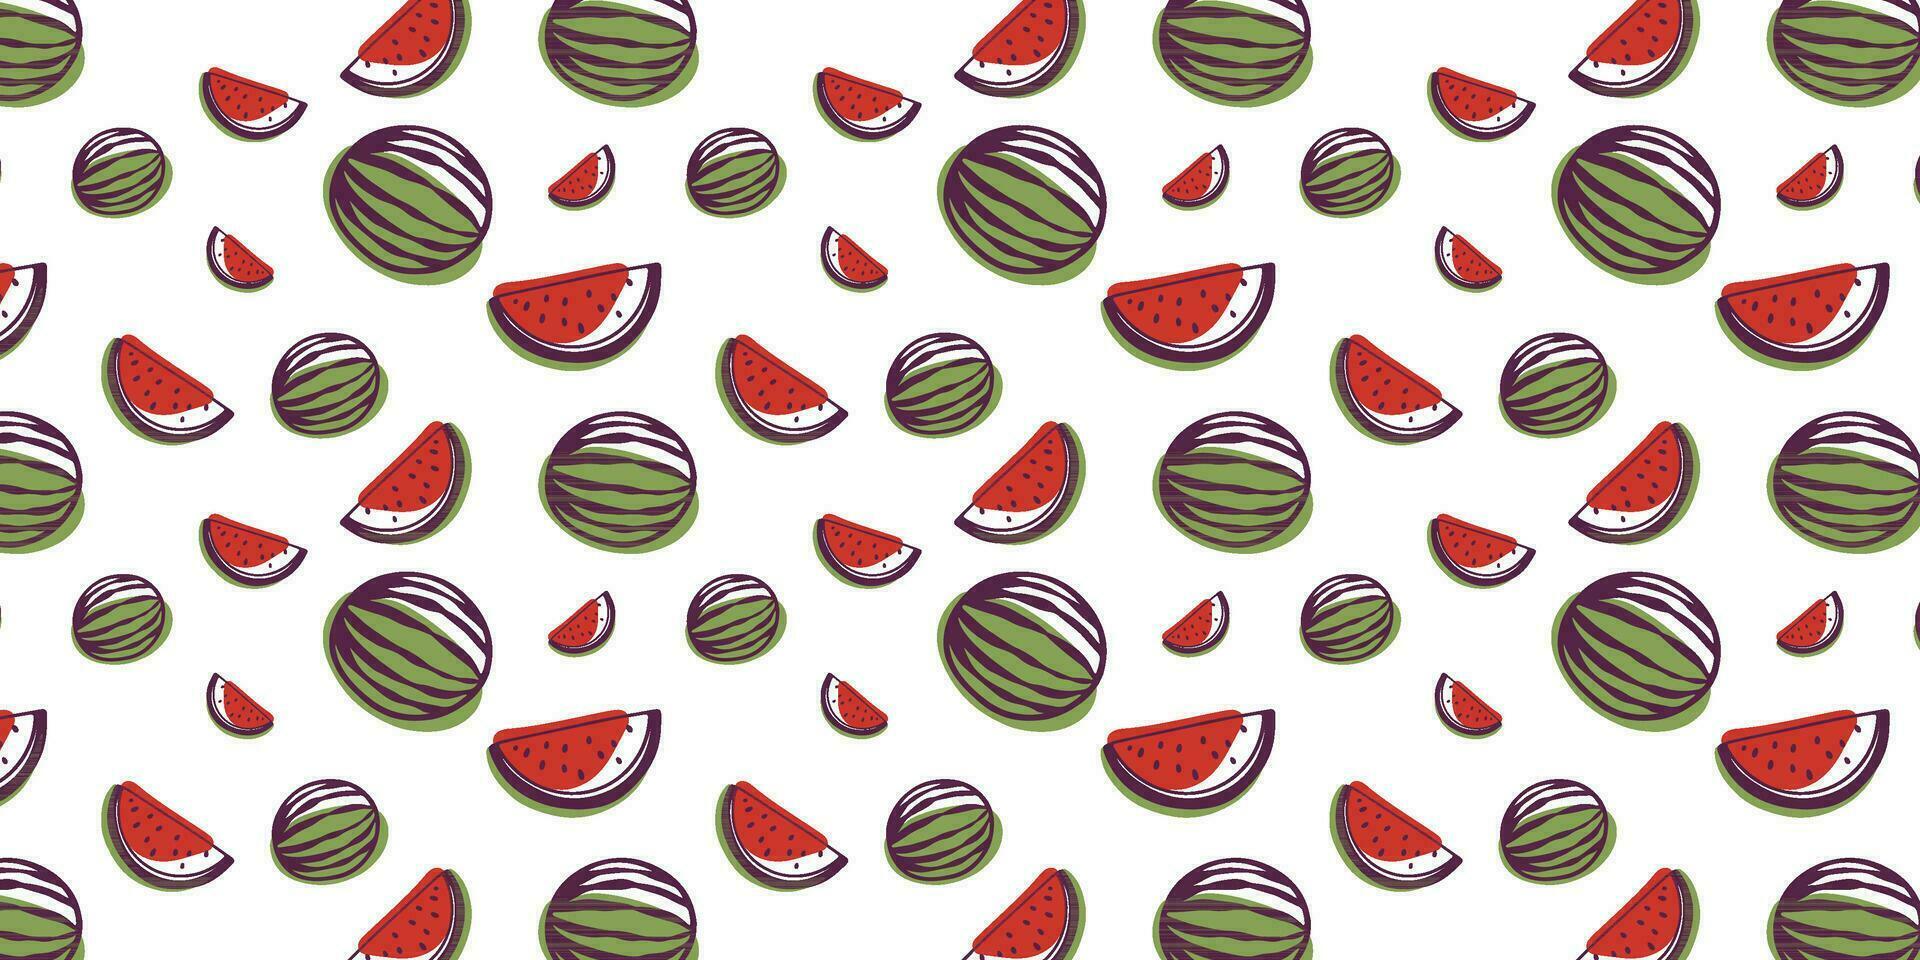 patroon naadloos, watermeloen, abstract illustratie, achtergrond naadloos vector